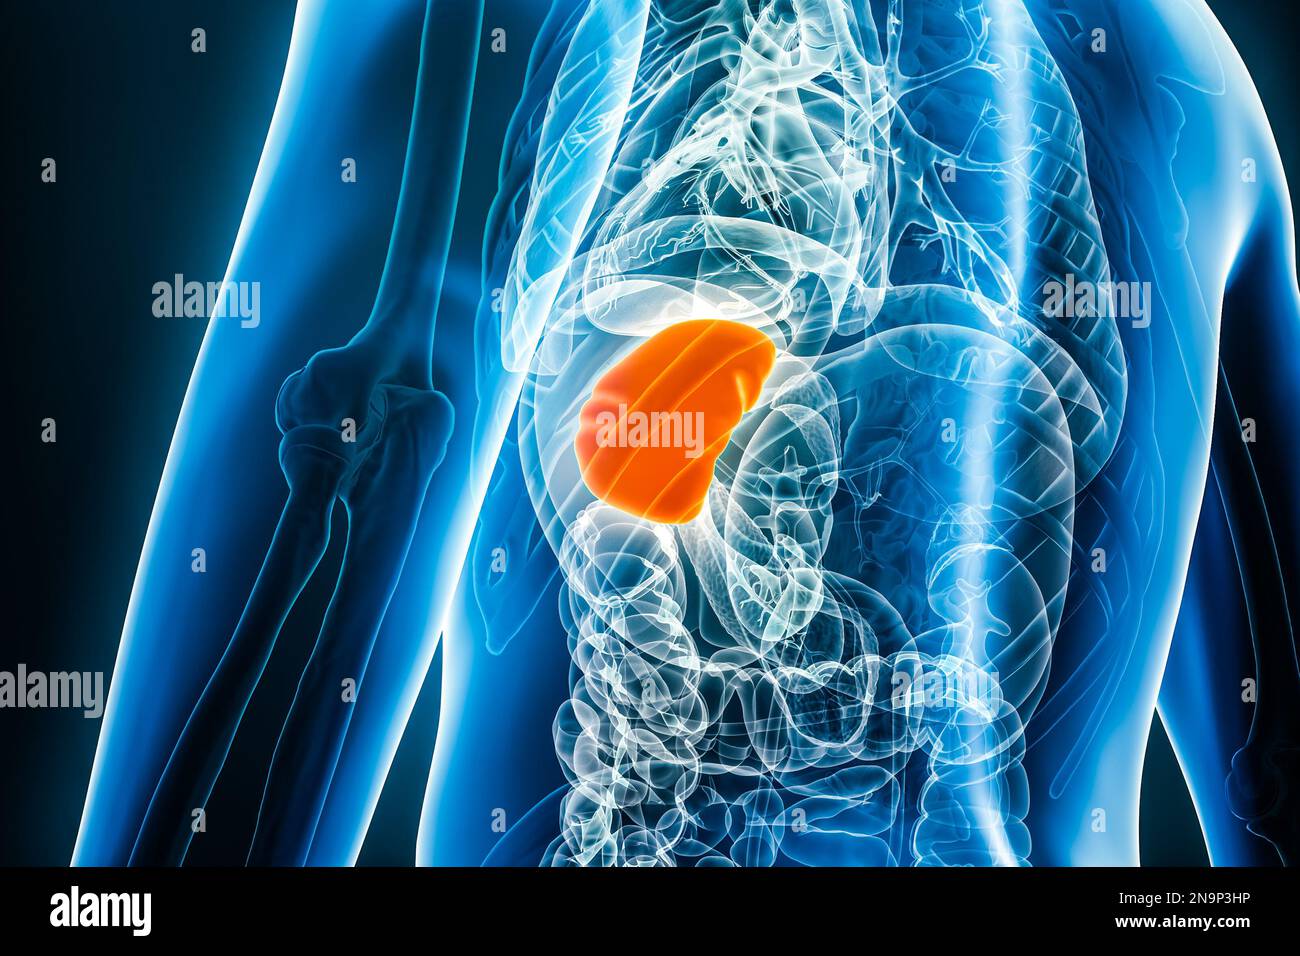 Immagine dell'organo interno della milza radiogena 3D con contorni del corpo maschile. Anatomia umana, medico, sistema linfoide, biologia, scienza, assistenza sanitaria co Foto Stock